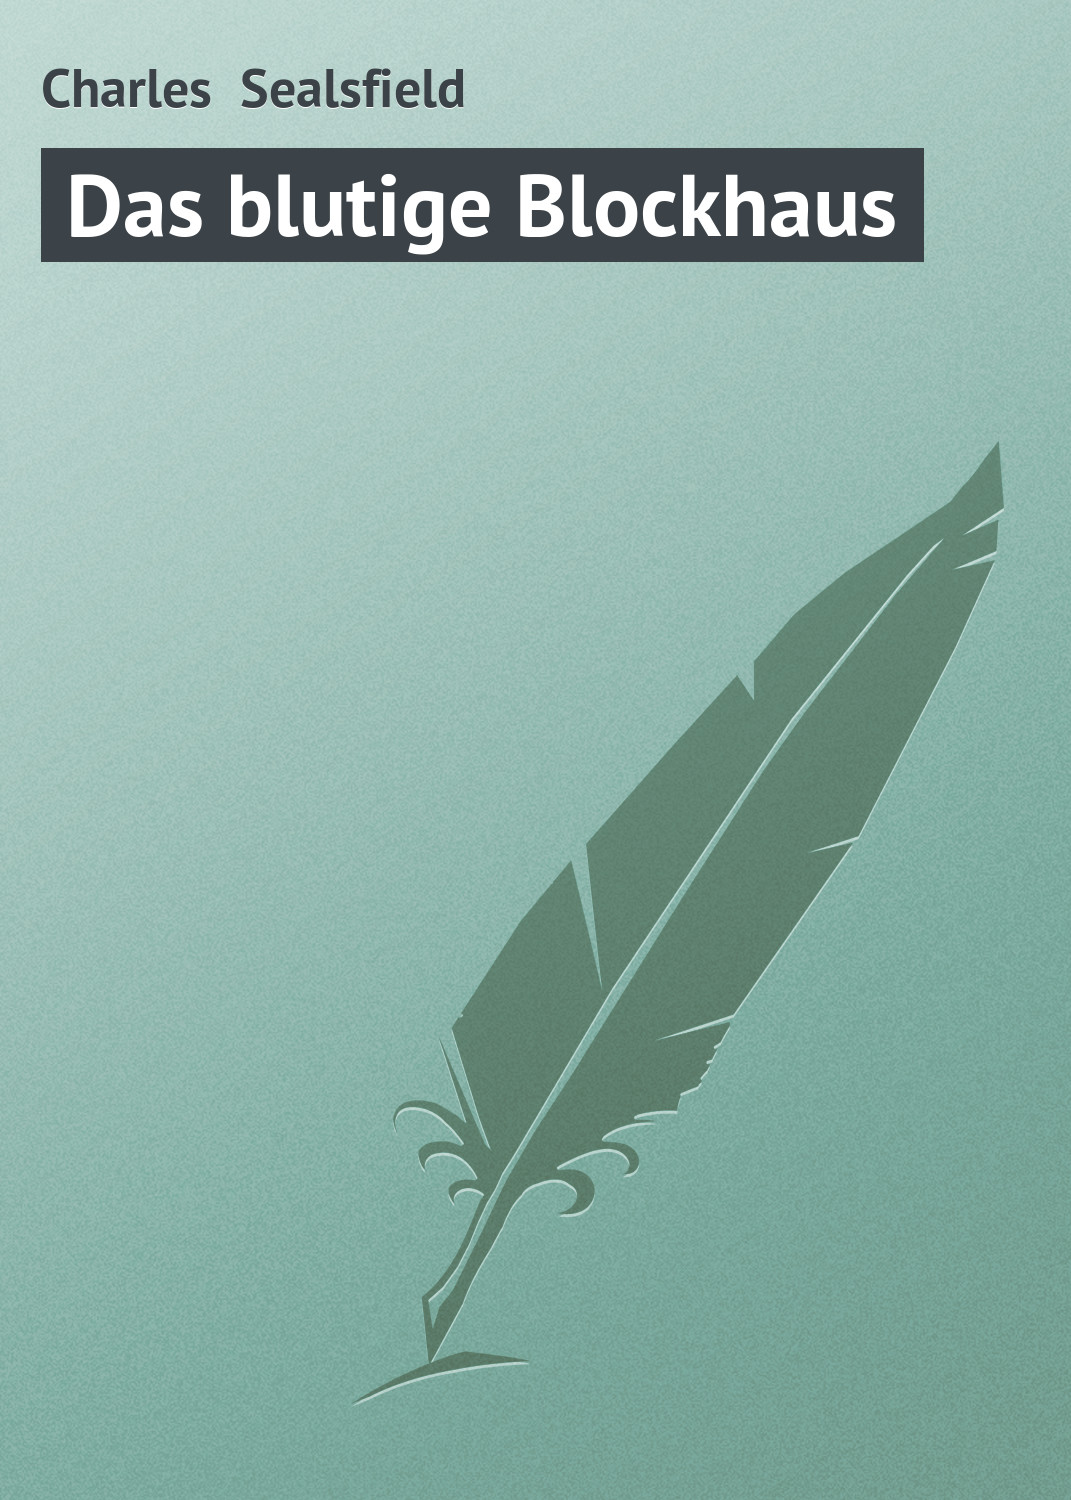 Книга Das blutige Blockhaus из серии , созданная Charles Sealsfield, может относится к жанру Зарубежная старинная литература, Зарубежная классика. Стоимость электронной книги Das blutige Blockhaus с идентификатором 21106686 составляет 5.99 руб.